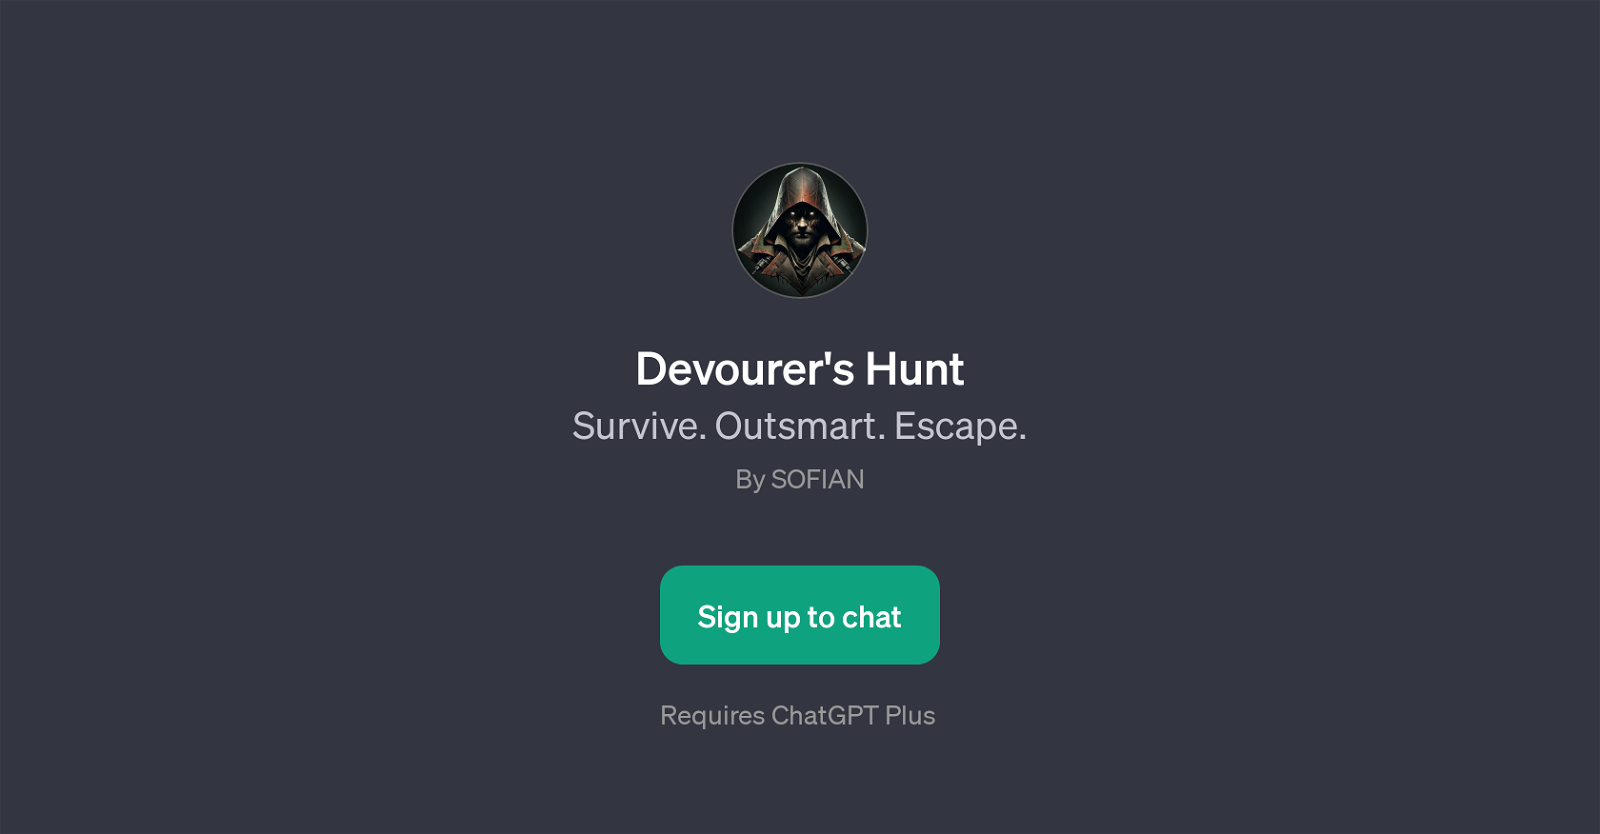 Devourer's Hunt website